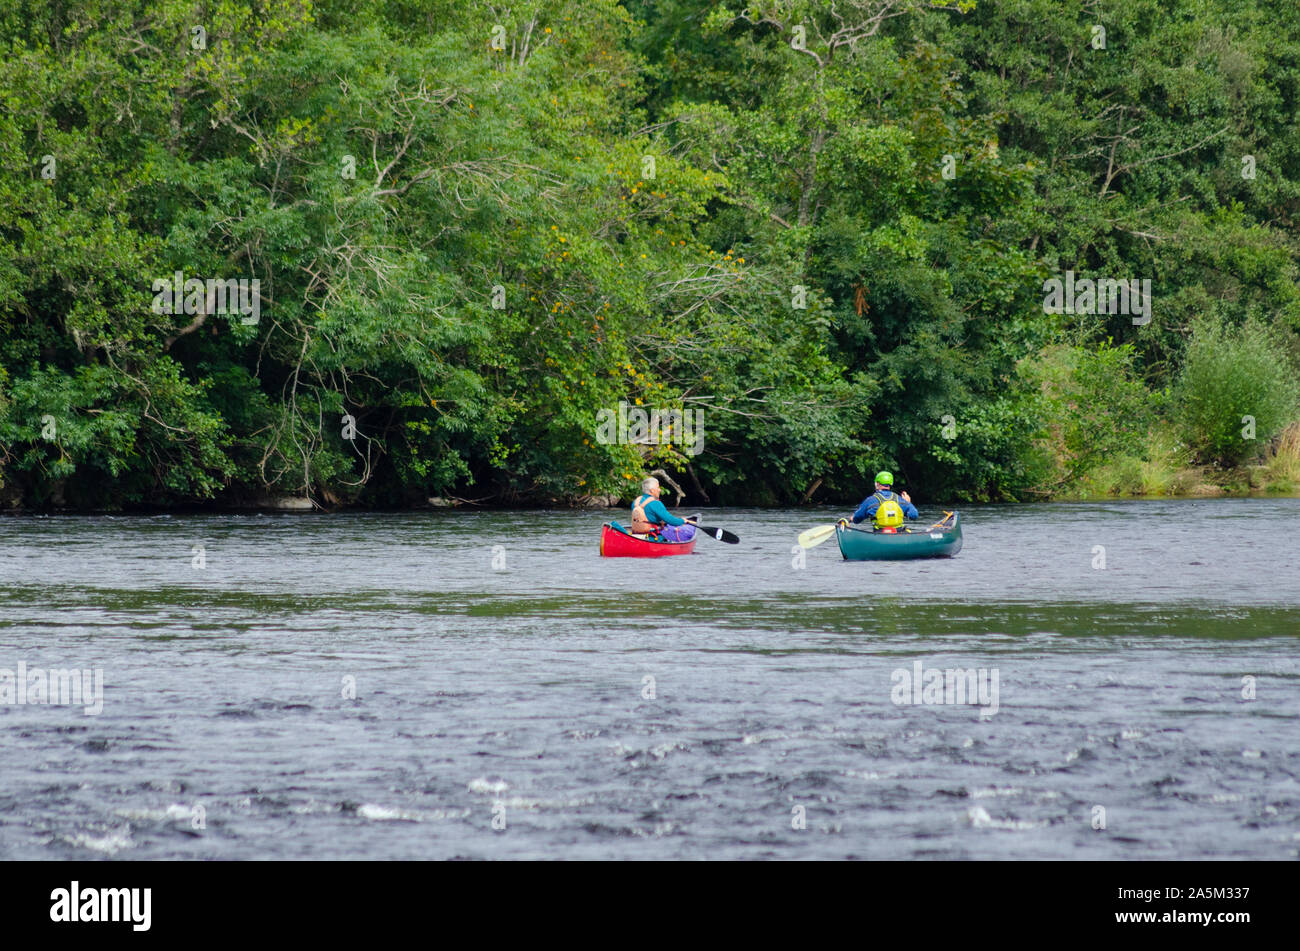 Personnes en canoë sur la rivière Tay, près de Pitlochry Perthshire Scotland UK Banque D'Images